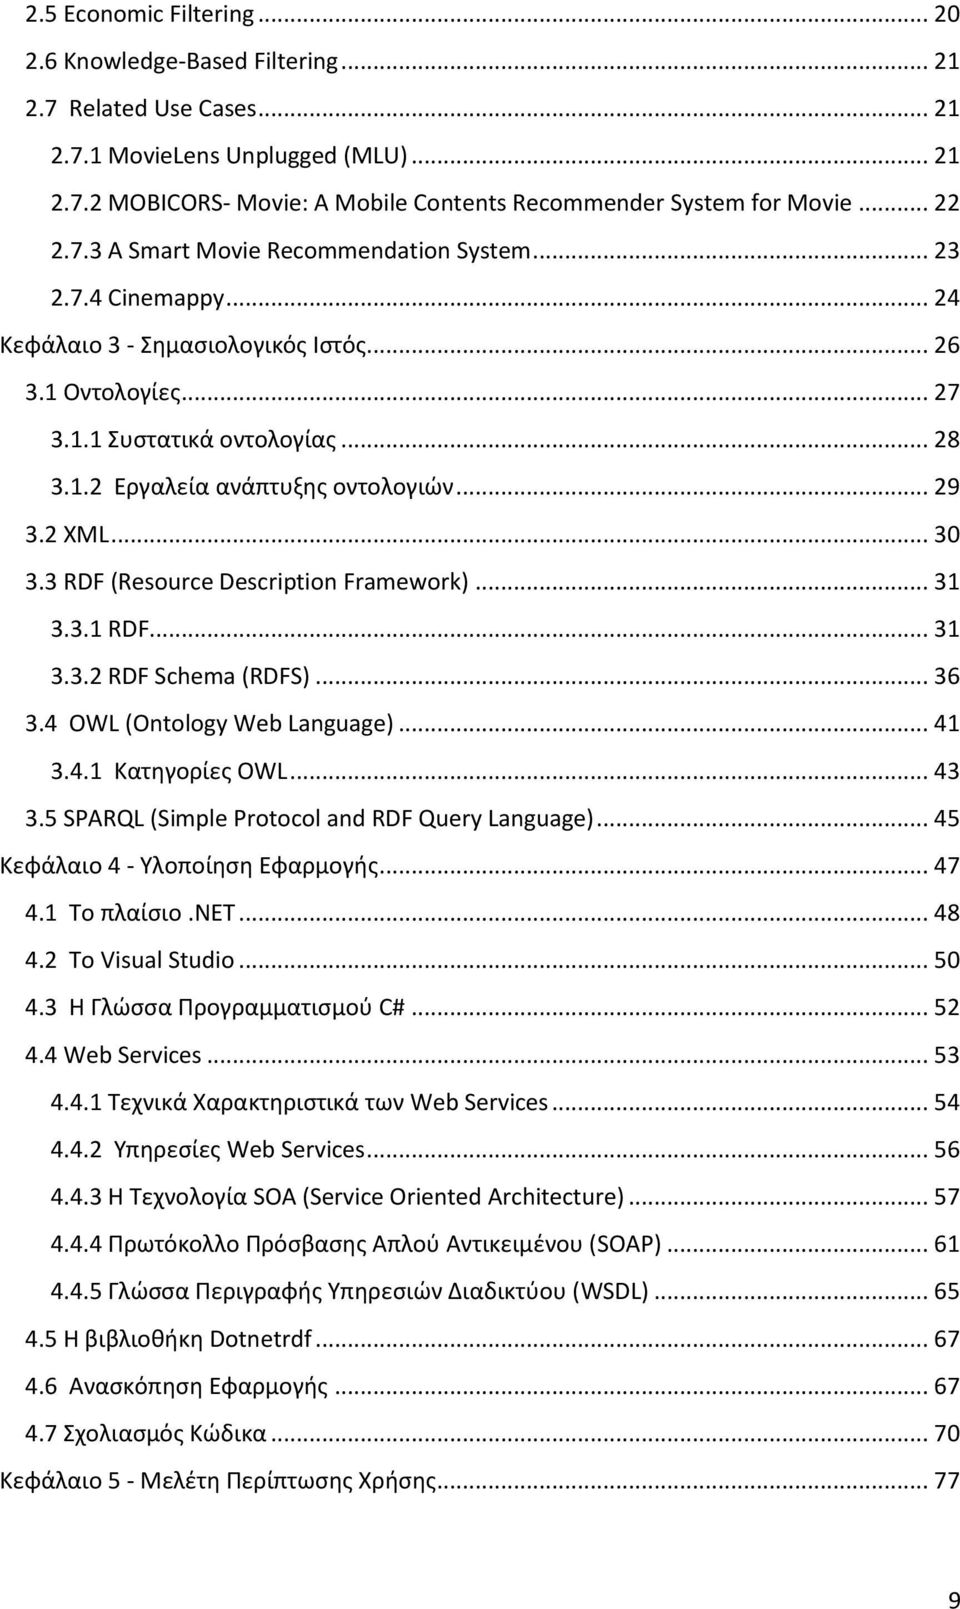 .. 29 3.2 XML... 30 3.3 RDF (Resource Description Framework)... 31 3.3.1 RDF... 31 3.3.2 RDF Schema (RDFS)... 36 3.4 OWL (Ontology Web Language)... 41 3.4.1 Κατηγορίες OWL... 43 3.